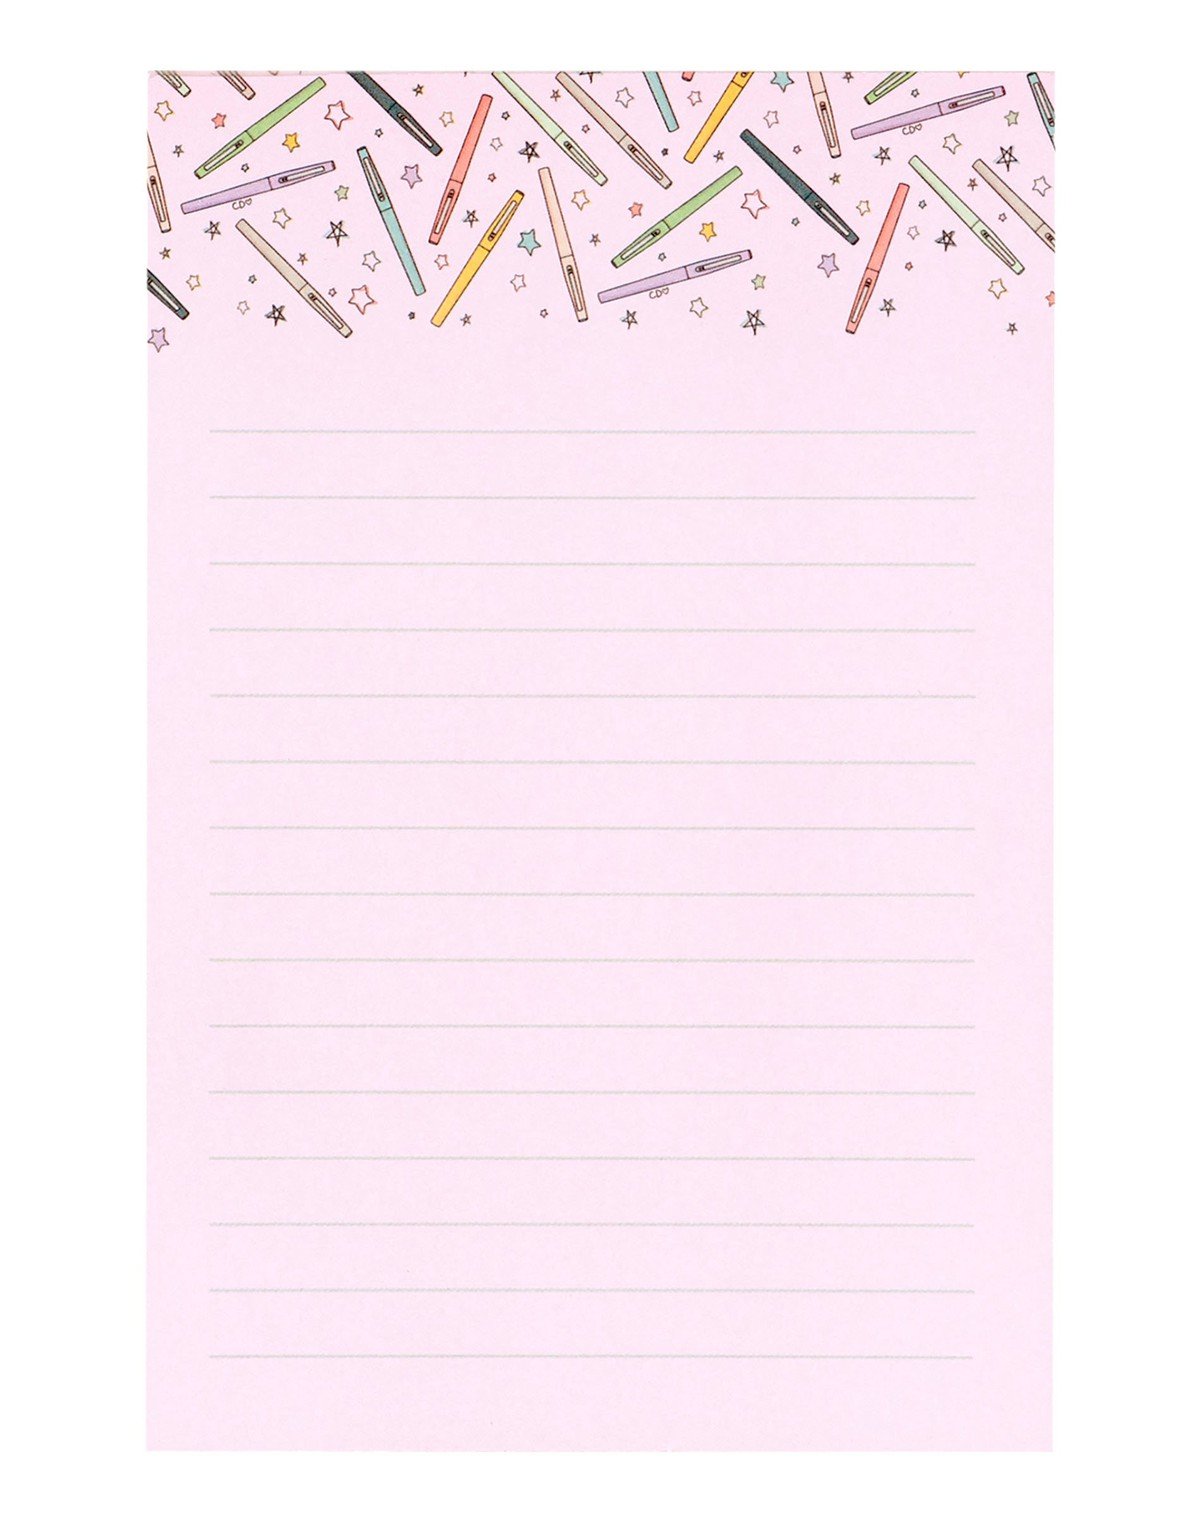 Flair Pens Notepad item